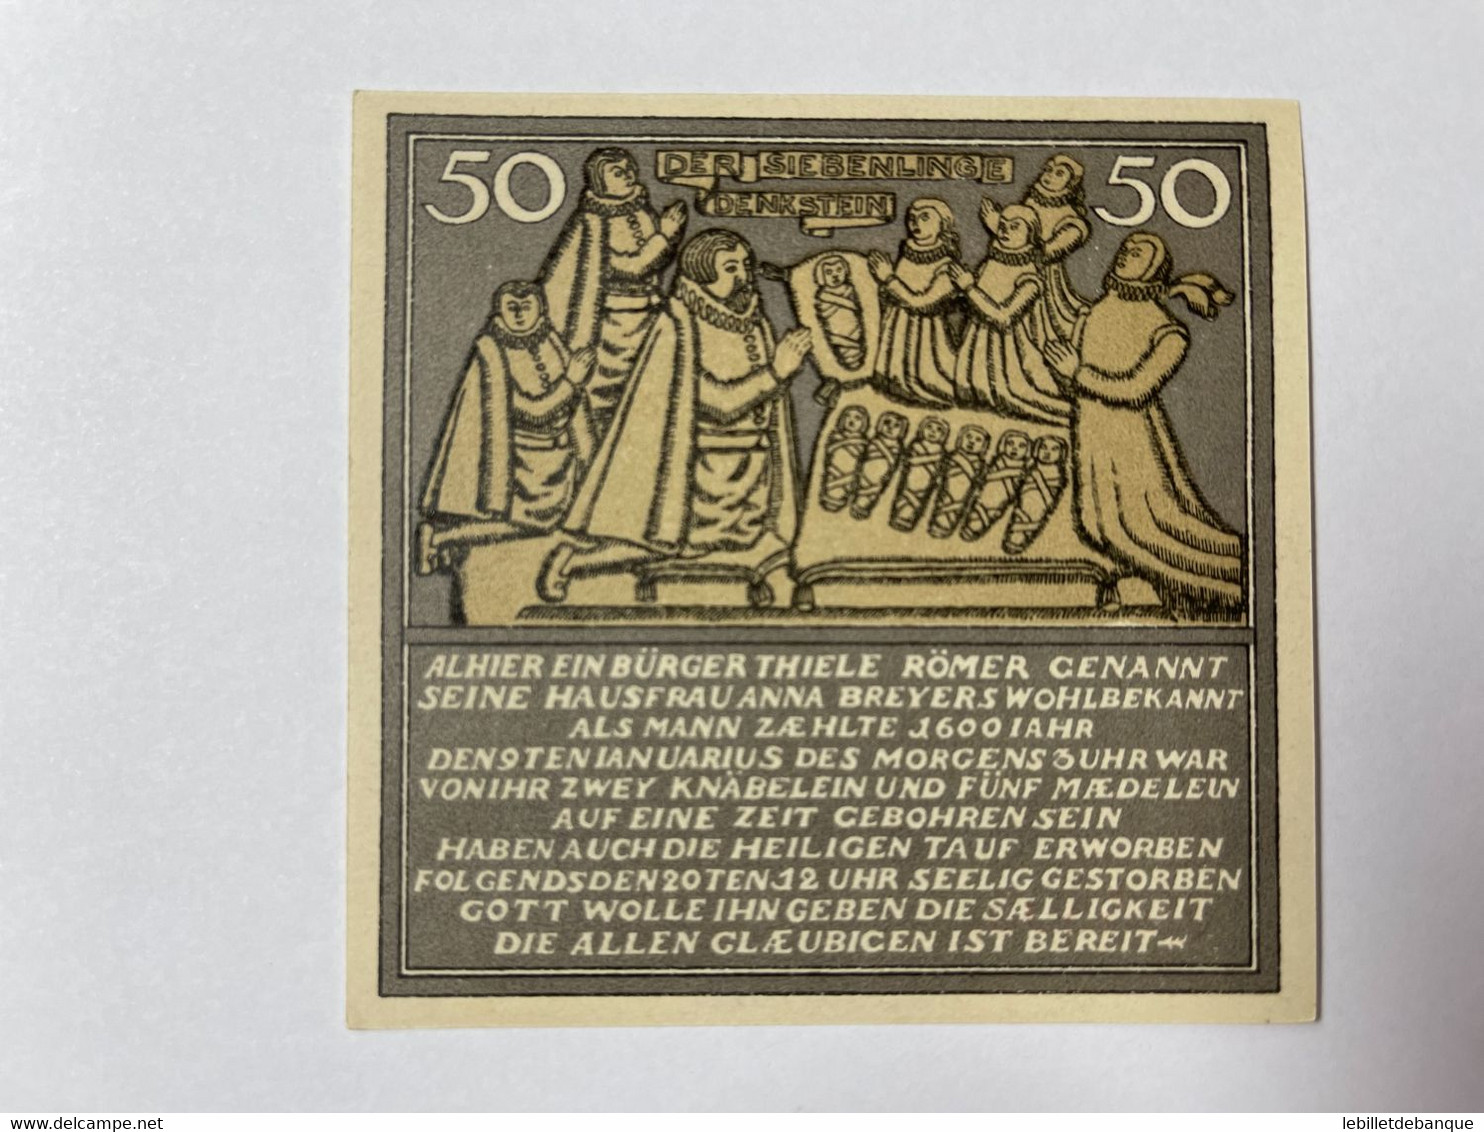 Allemagne Notgeld Hameln 50 Pfennig - Collections